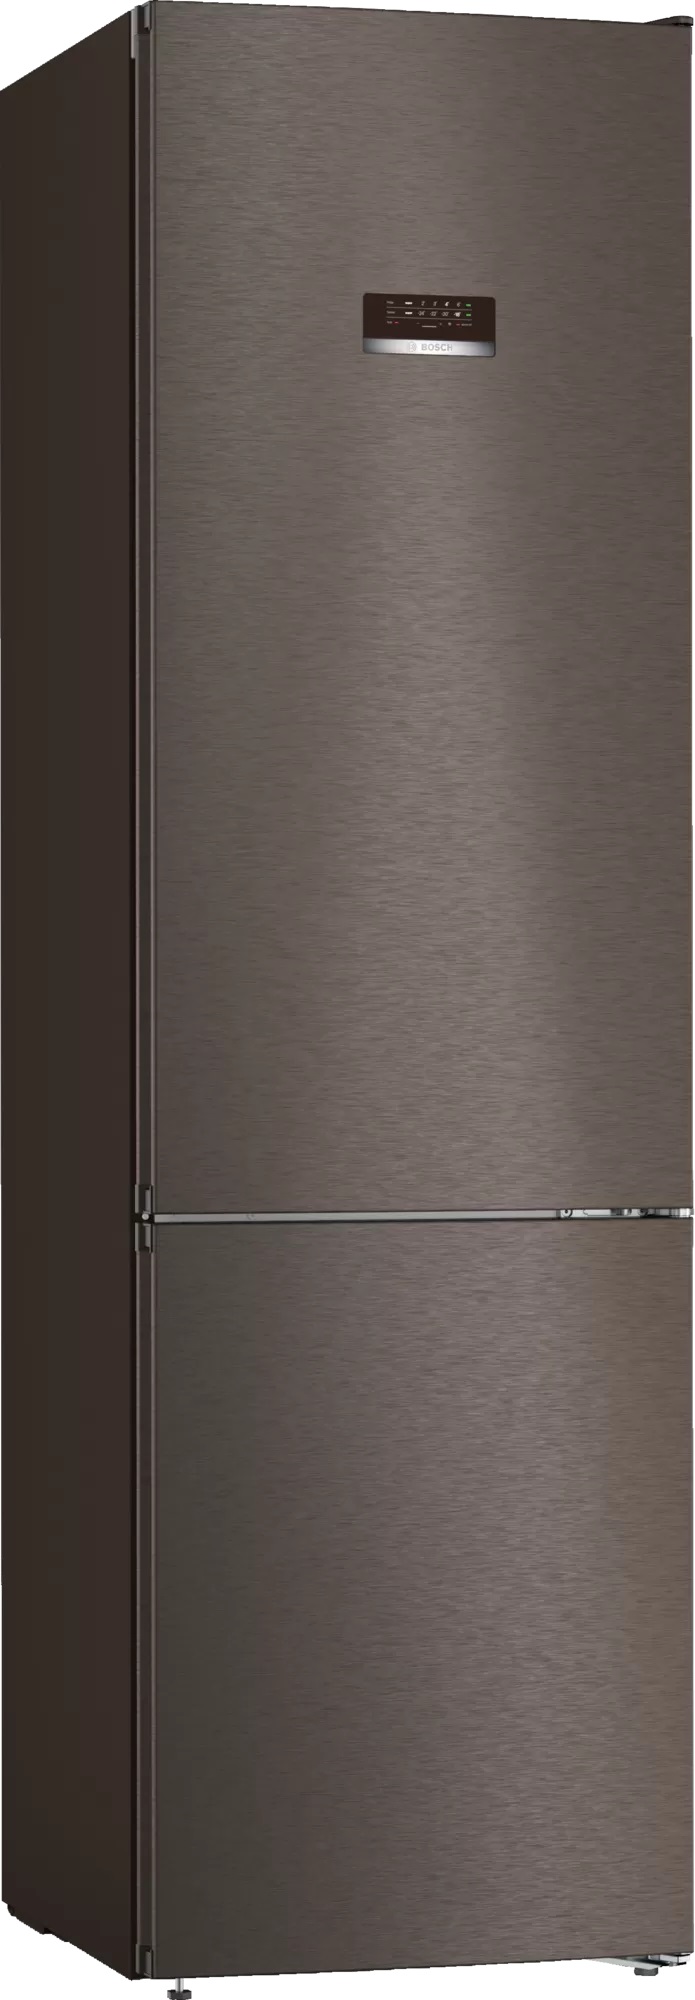 Холодильник BOSCH KGN39XG20R																		 — описание, фото, цены в интернет-магазине Премьер Техно